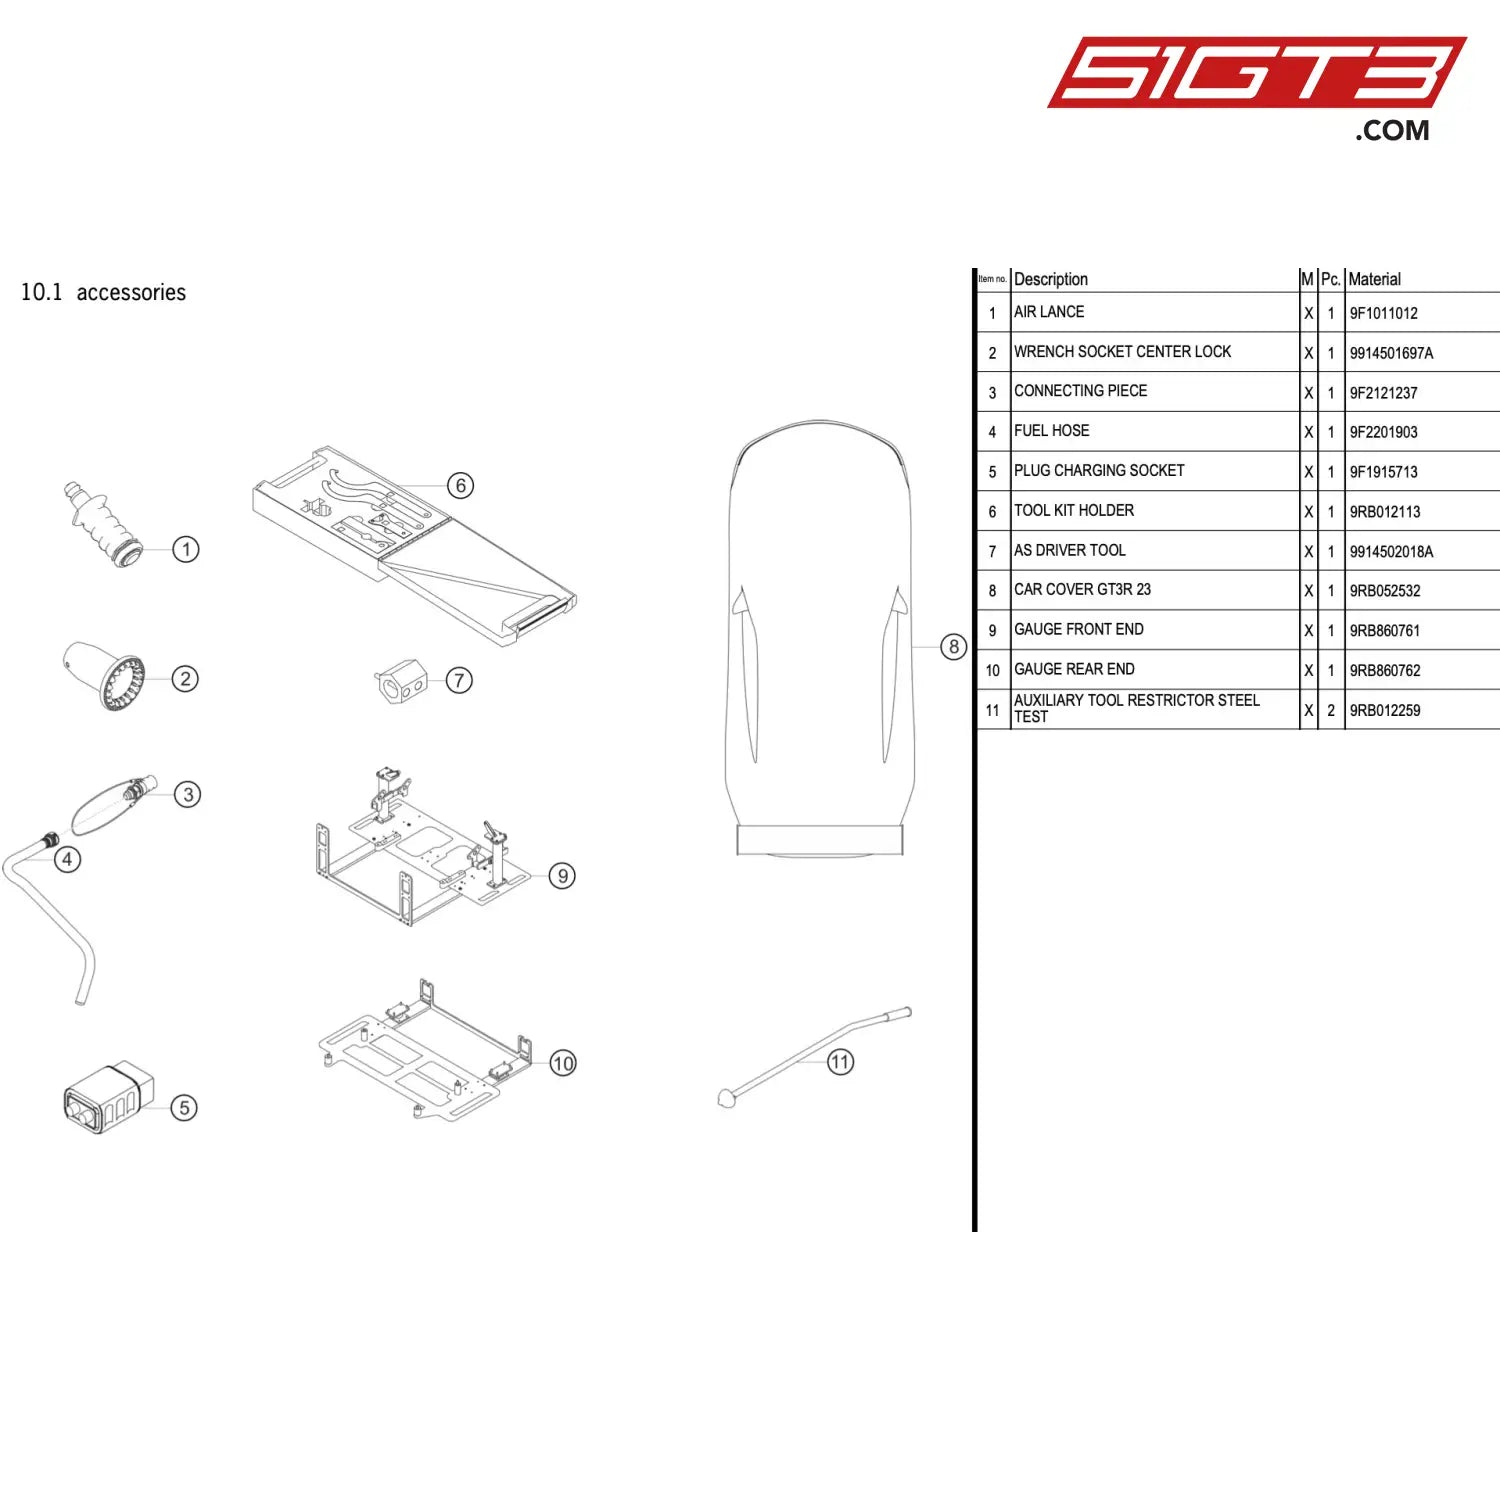 Tool Kit Holder - 9Rb012113 [Porsche 911 Gt3 R Type 992 (Gen 1)] Accessories